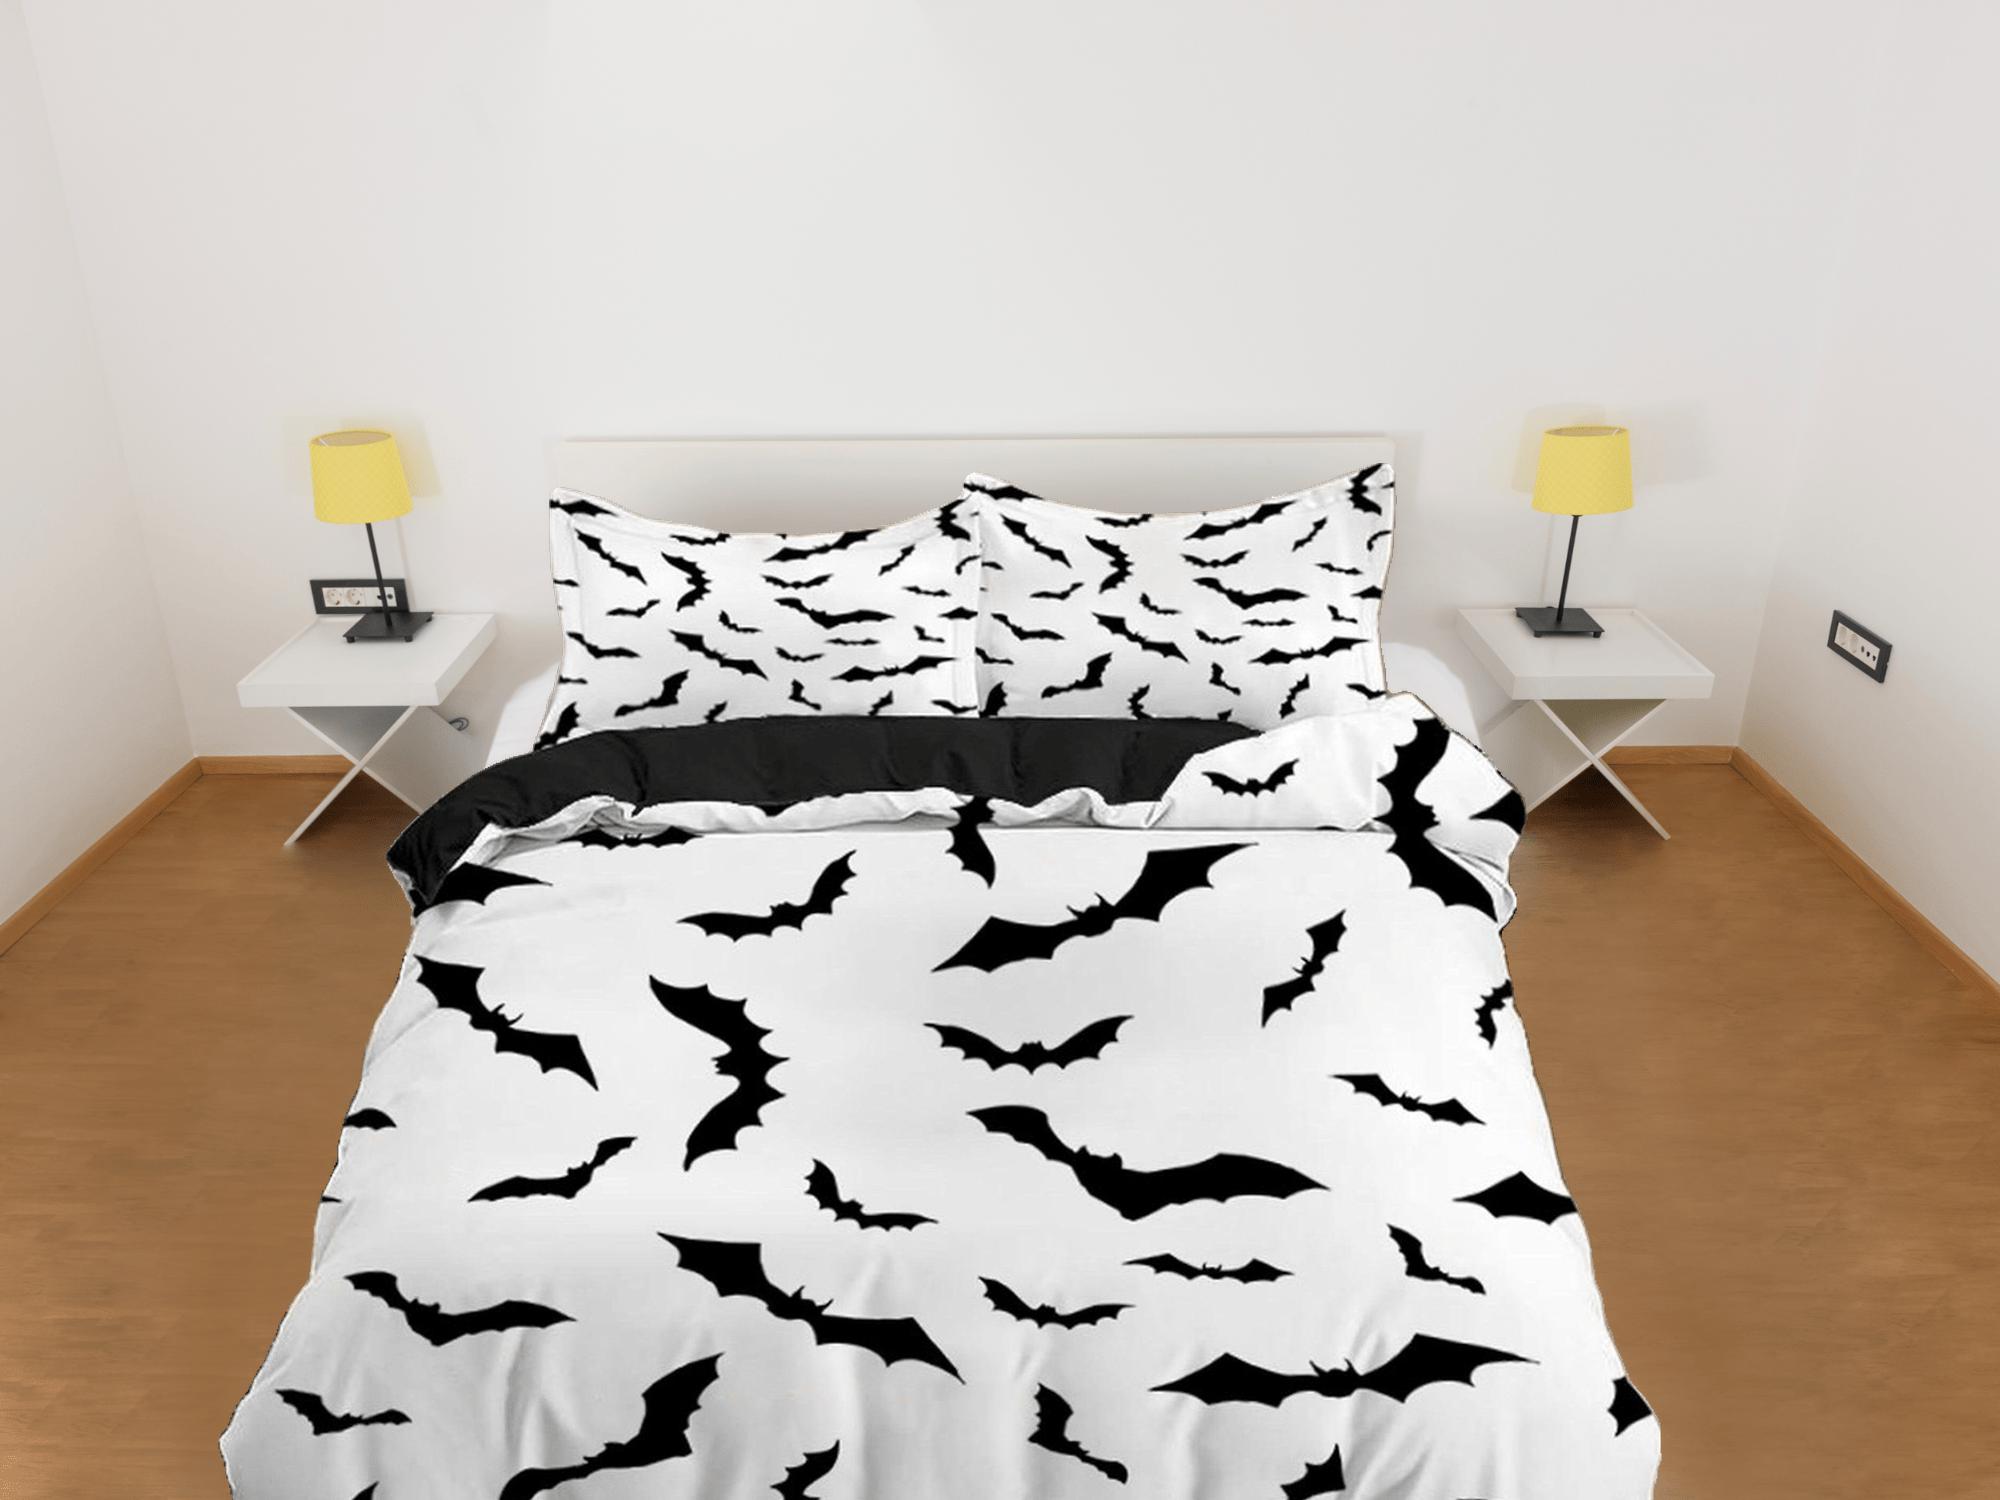 daintyduvet Bat prints halloween full size bedding & pillowcase, duvet cover set dorm bedding, halloween decor, nursery toddler bedding, halloween gift